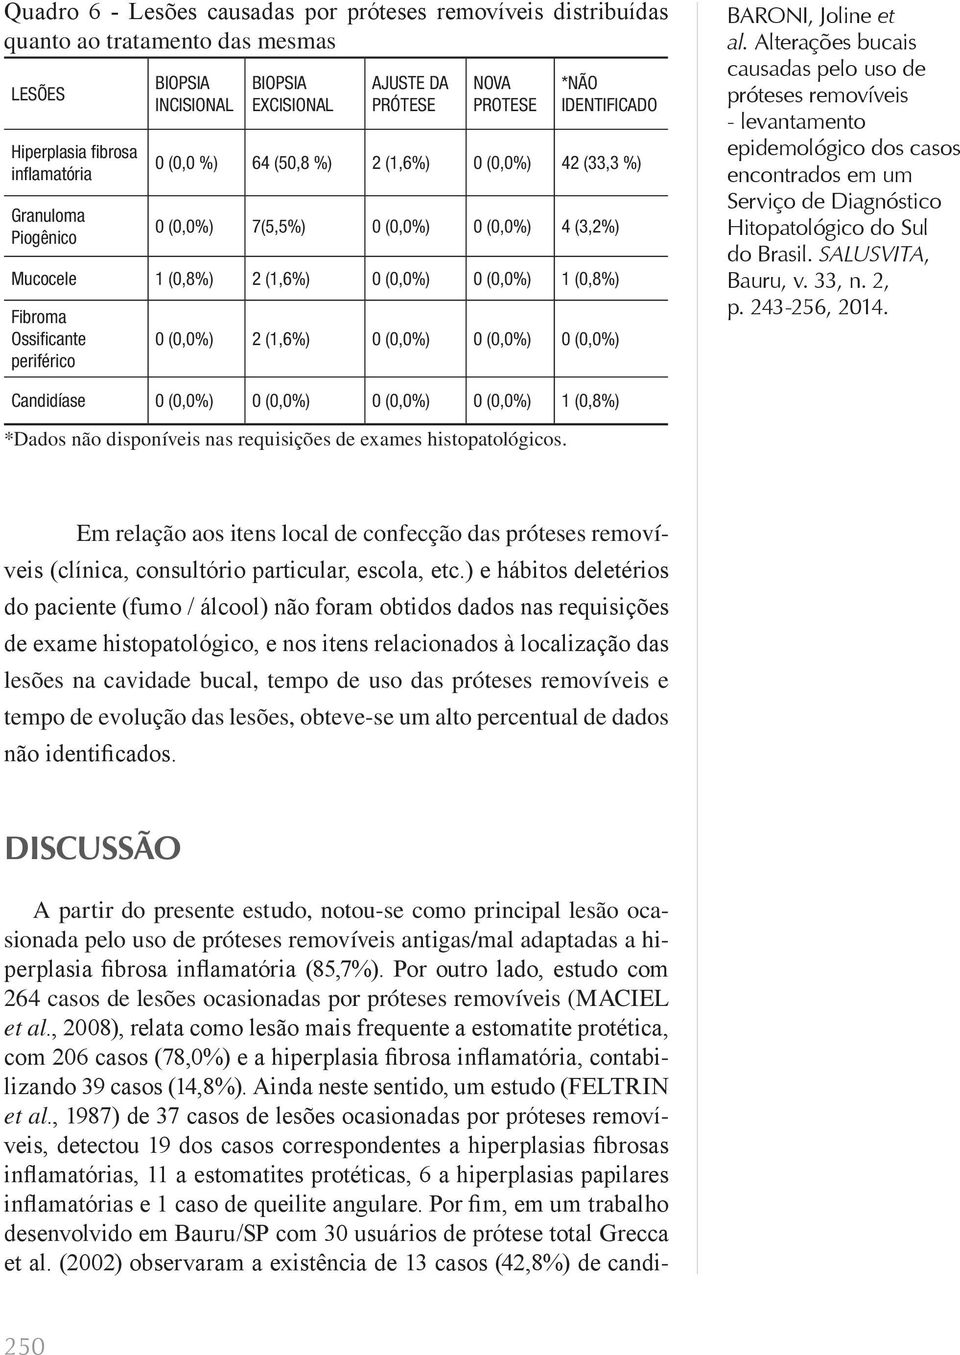 periférico 0 (0,0%) 2 (1,6%) 0 (0,0%) 0 (0,0%) 0 (0,0%) BARONI, Joline et Candidíase 0 (0,0%) 0 (0,0%) 0 (0,0%) 0 (0,0%) 1 (0,8%) *Dados não disponíveis nas requisições de exames histopatológicos.